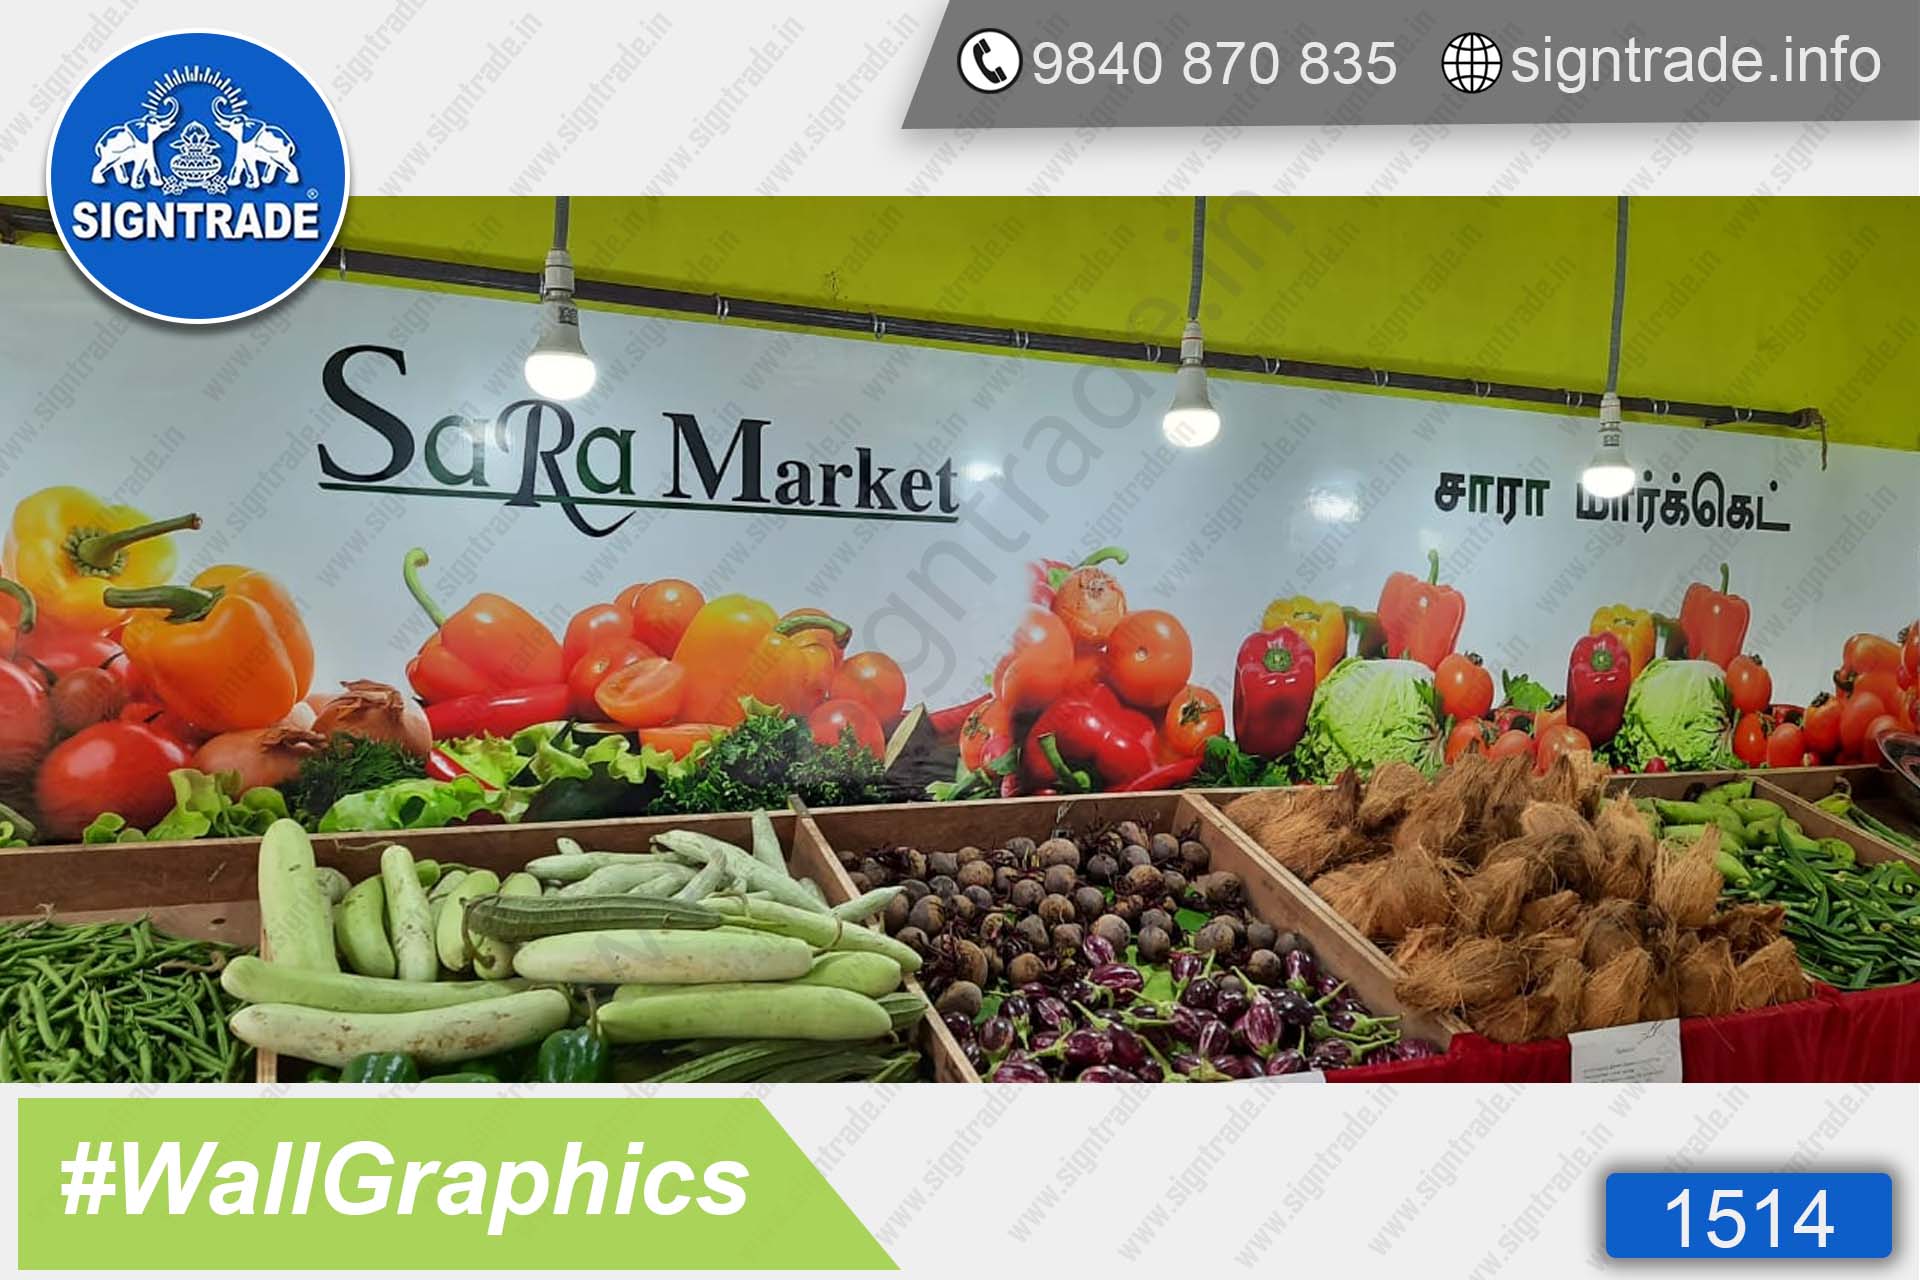 Sara Market, Madambakkam, Chennai - SIGNTRADE - Wall Graphics - Vinyl Graphics on Wall - Digital Printing Services in Chennai